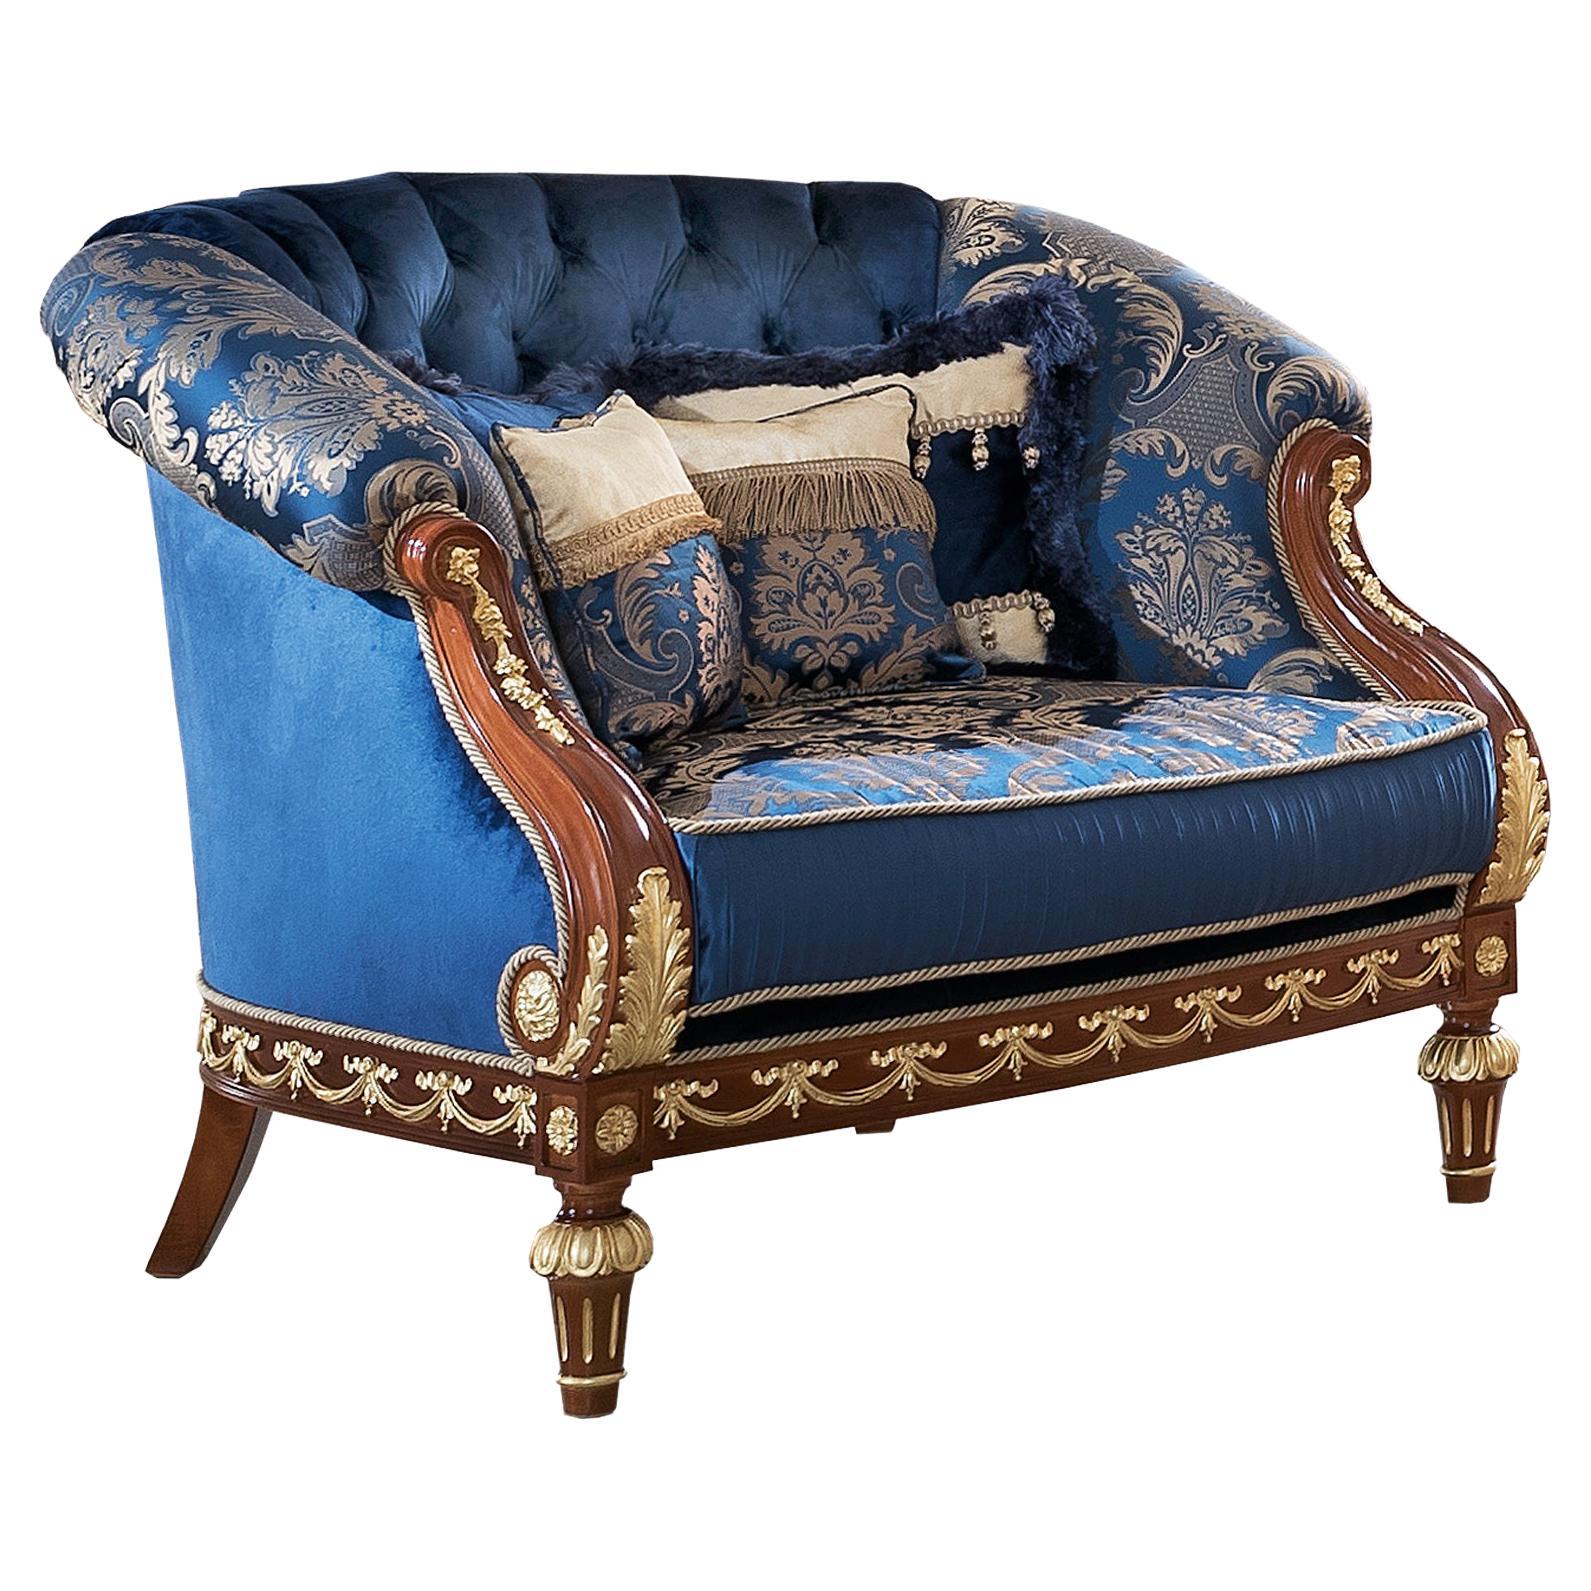 Blauer Classic-Sessel mit Damast und Walnussholzbezug von Modenese Interiors